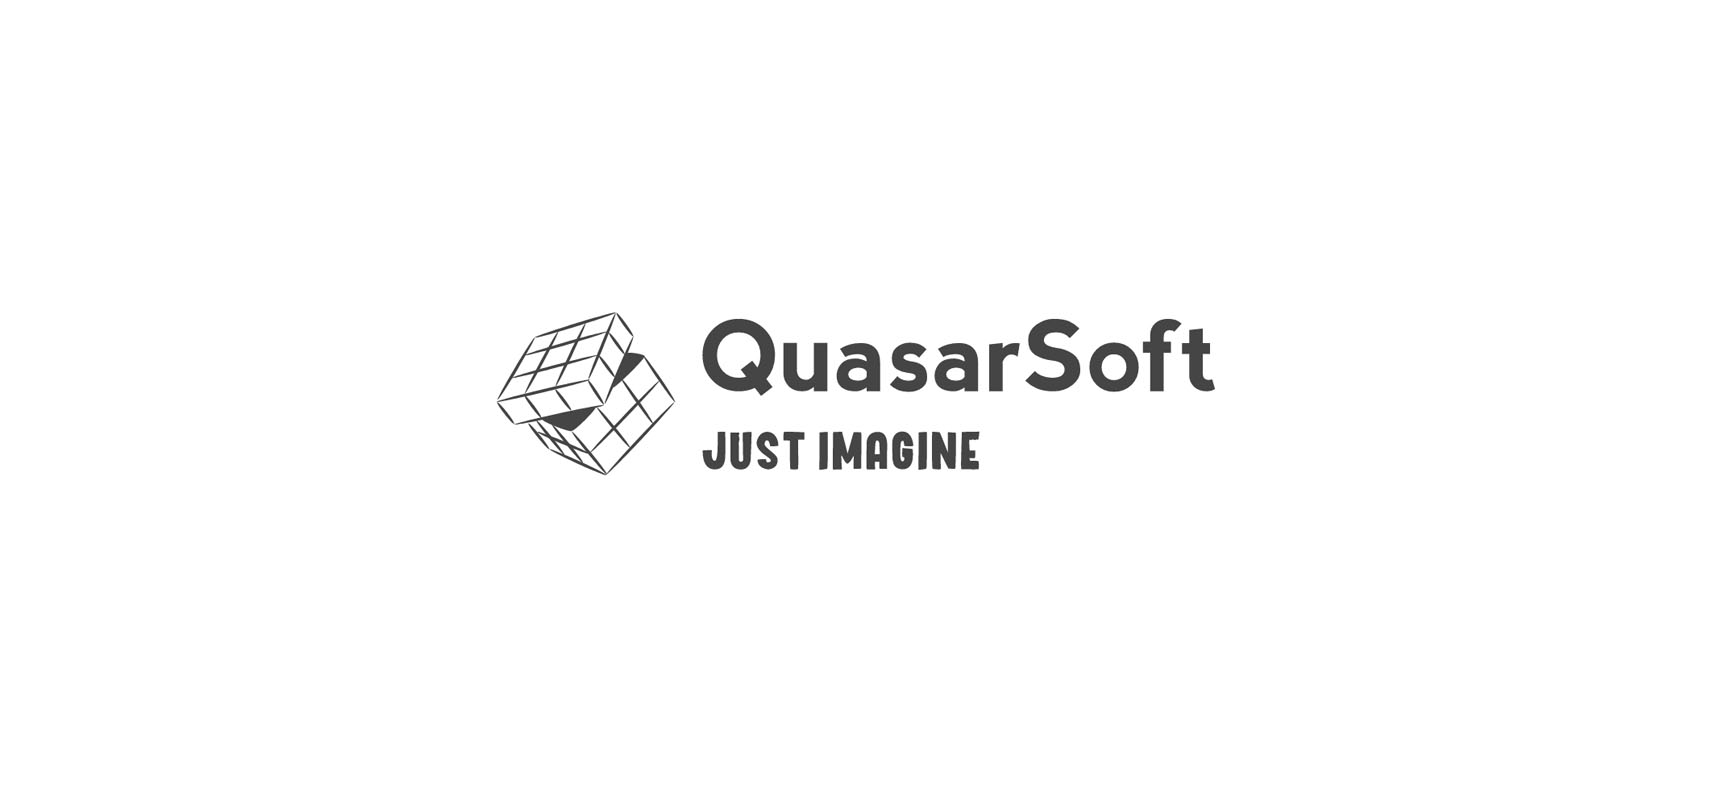 QuasarSoft